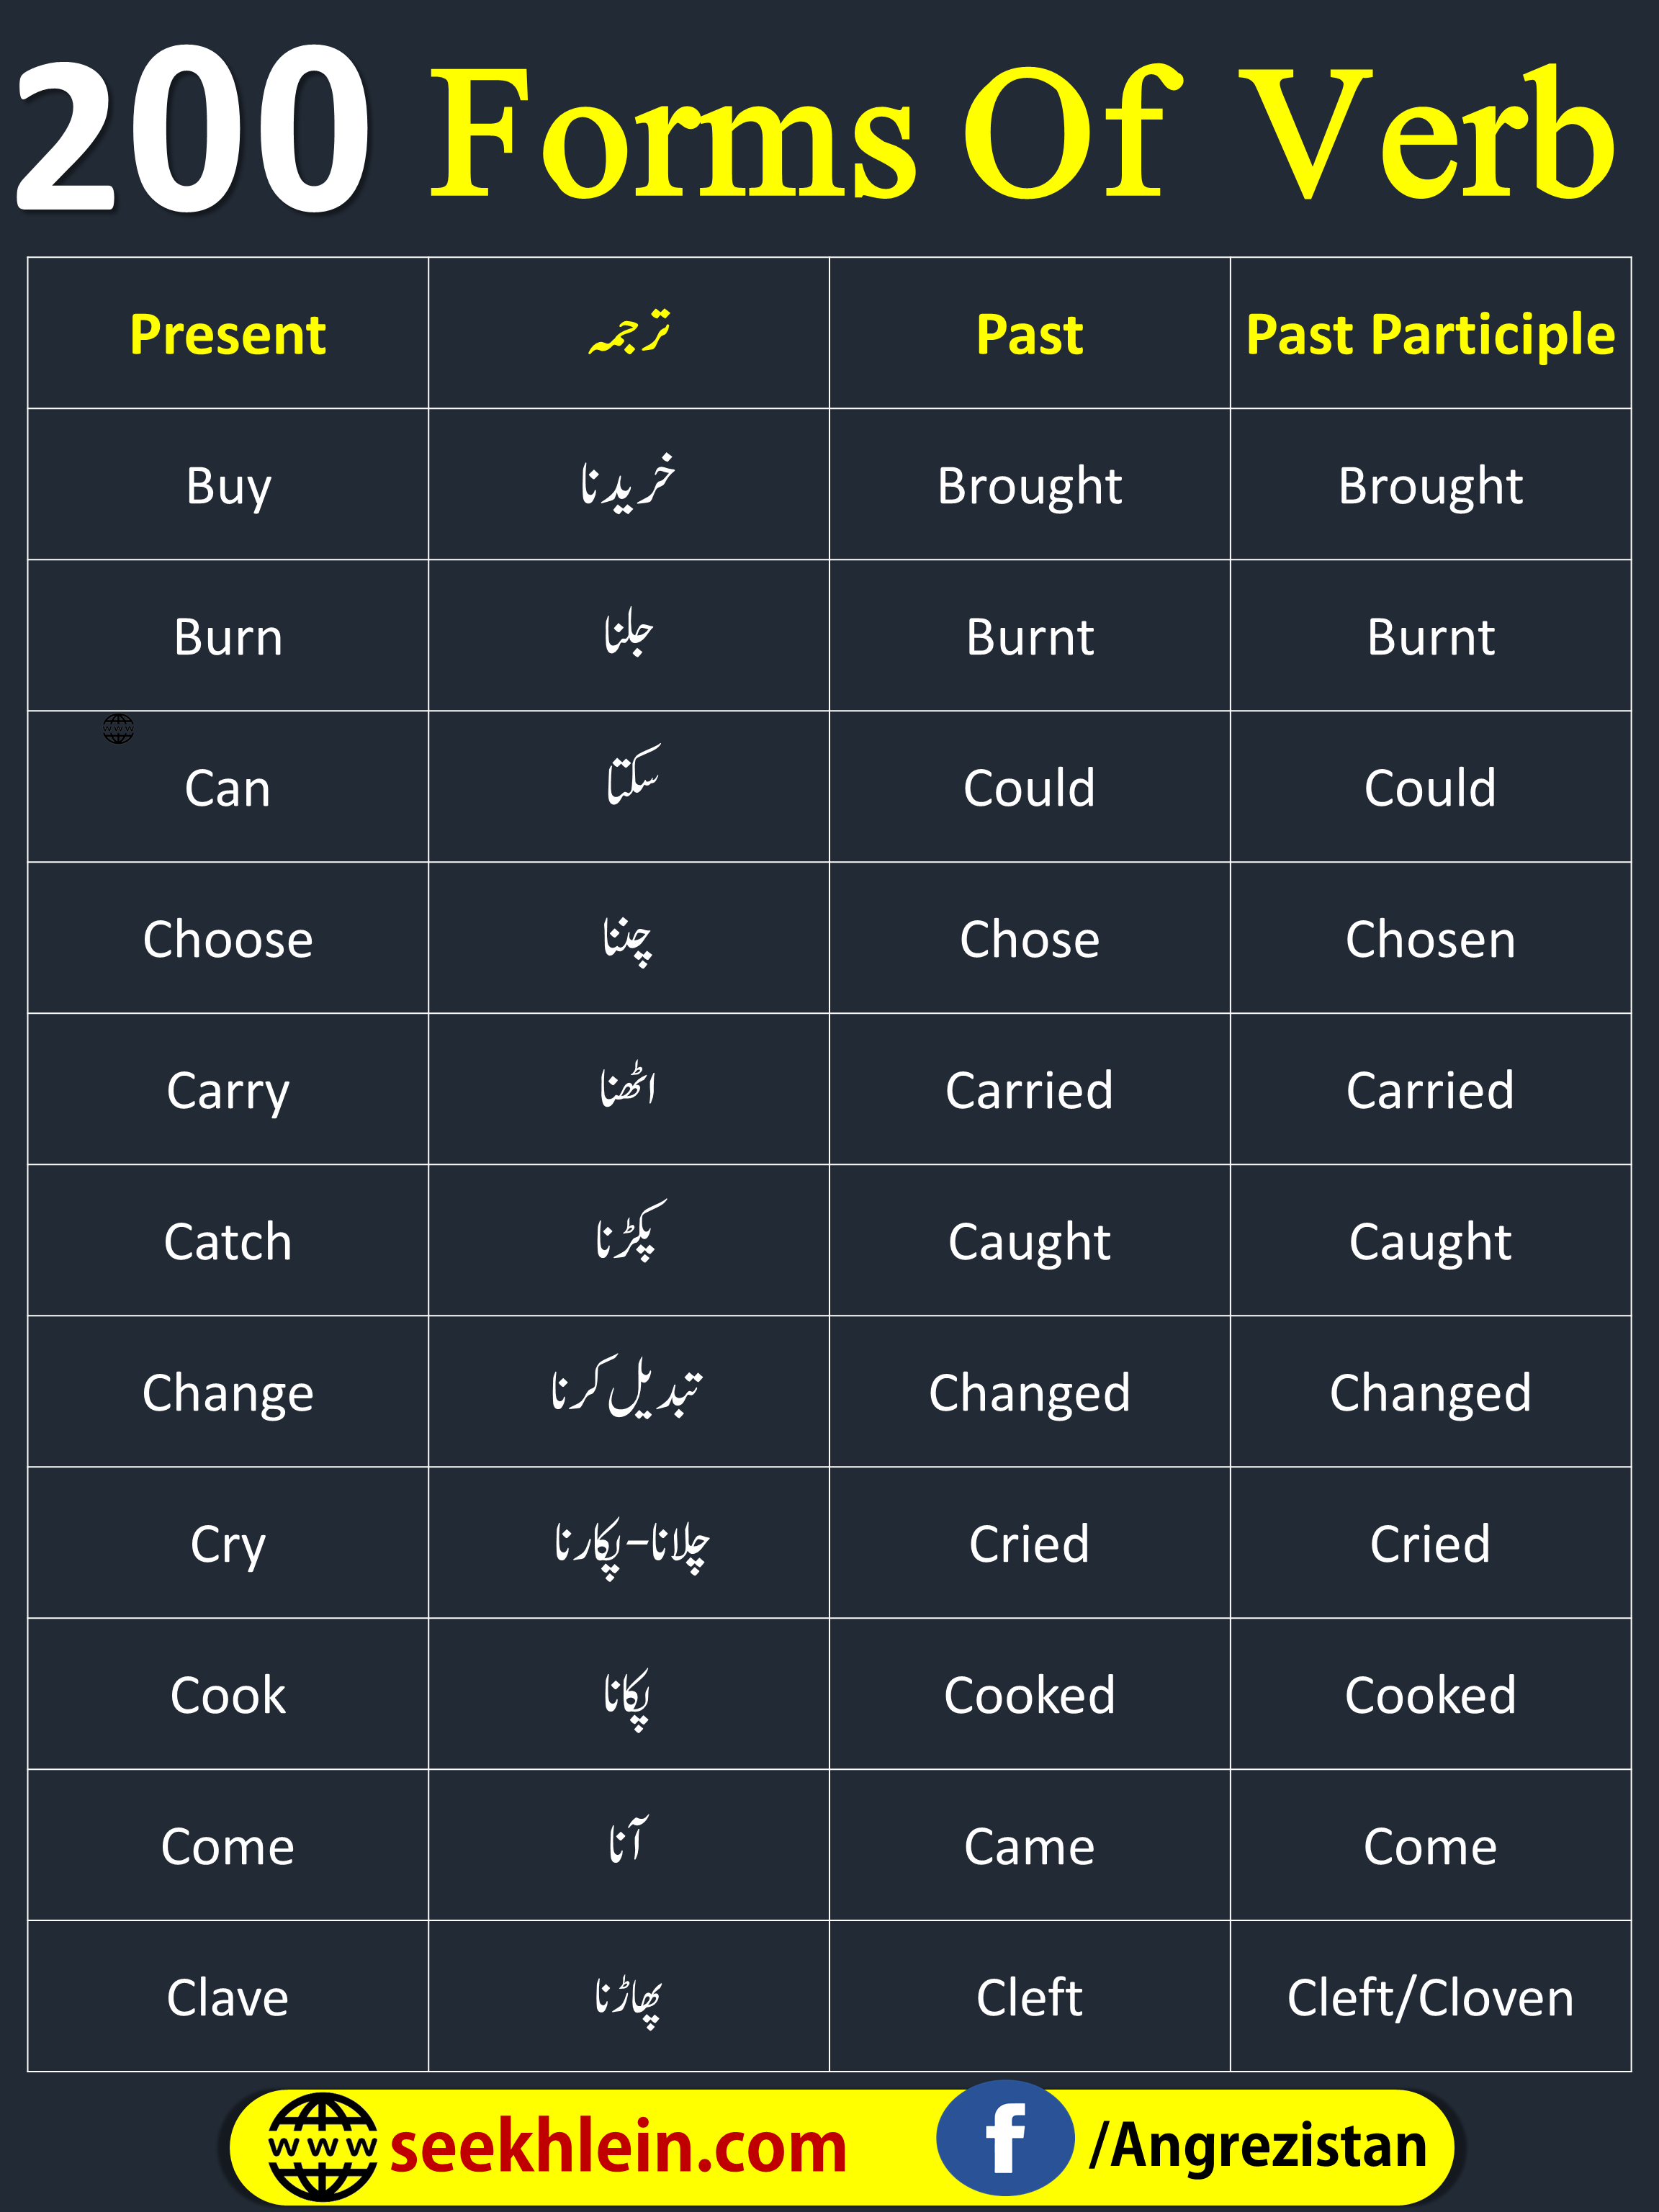 200 Forms Of Verbs In Urdu Meanings